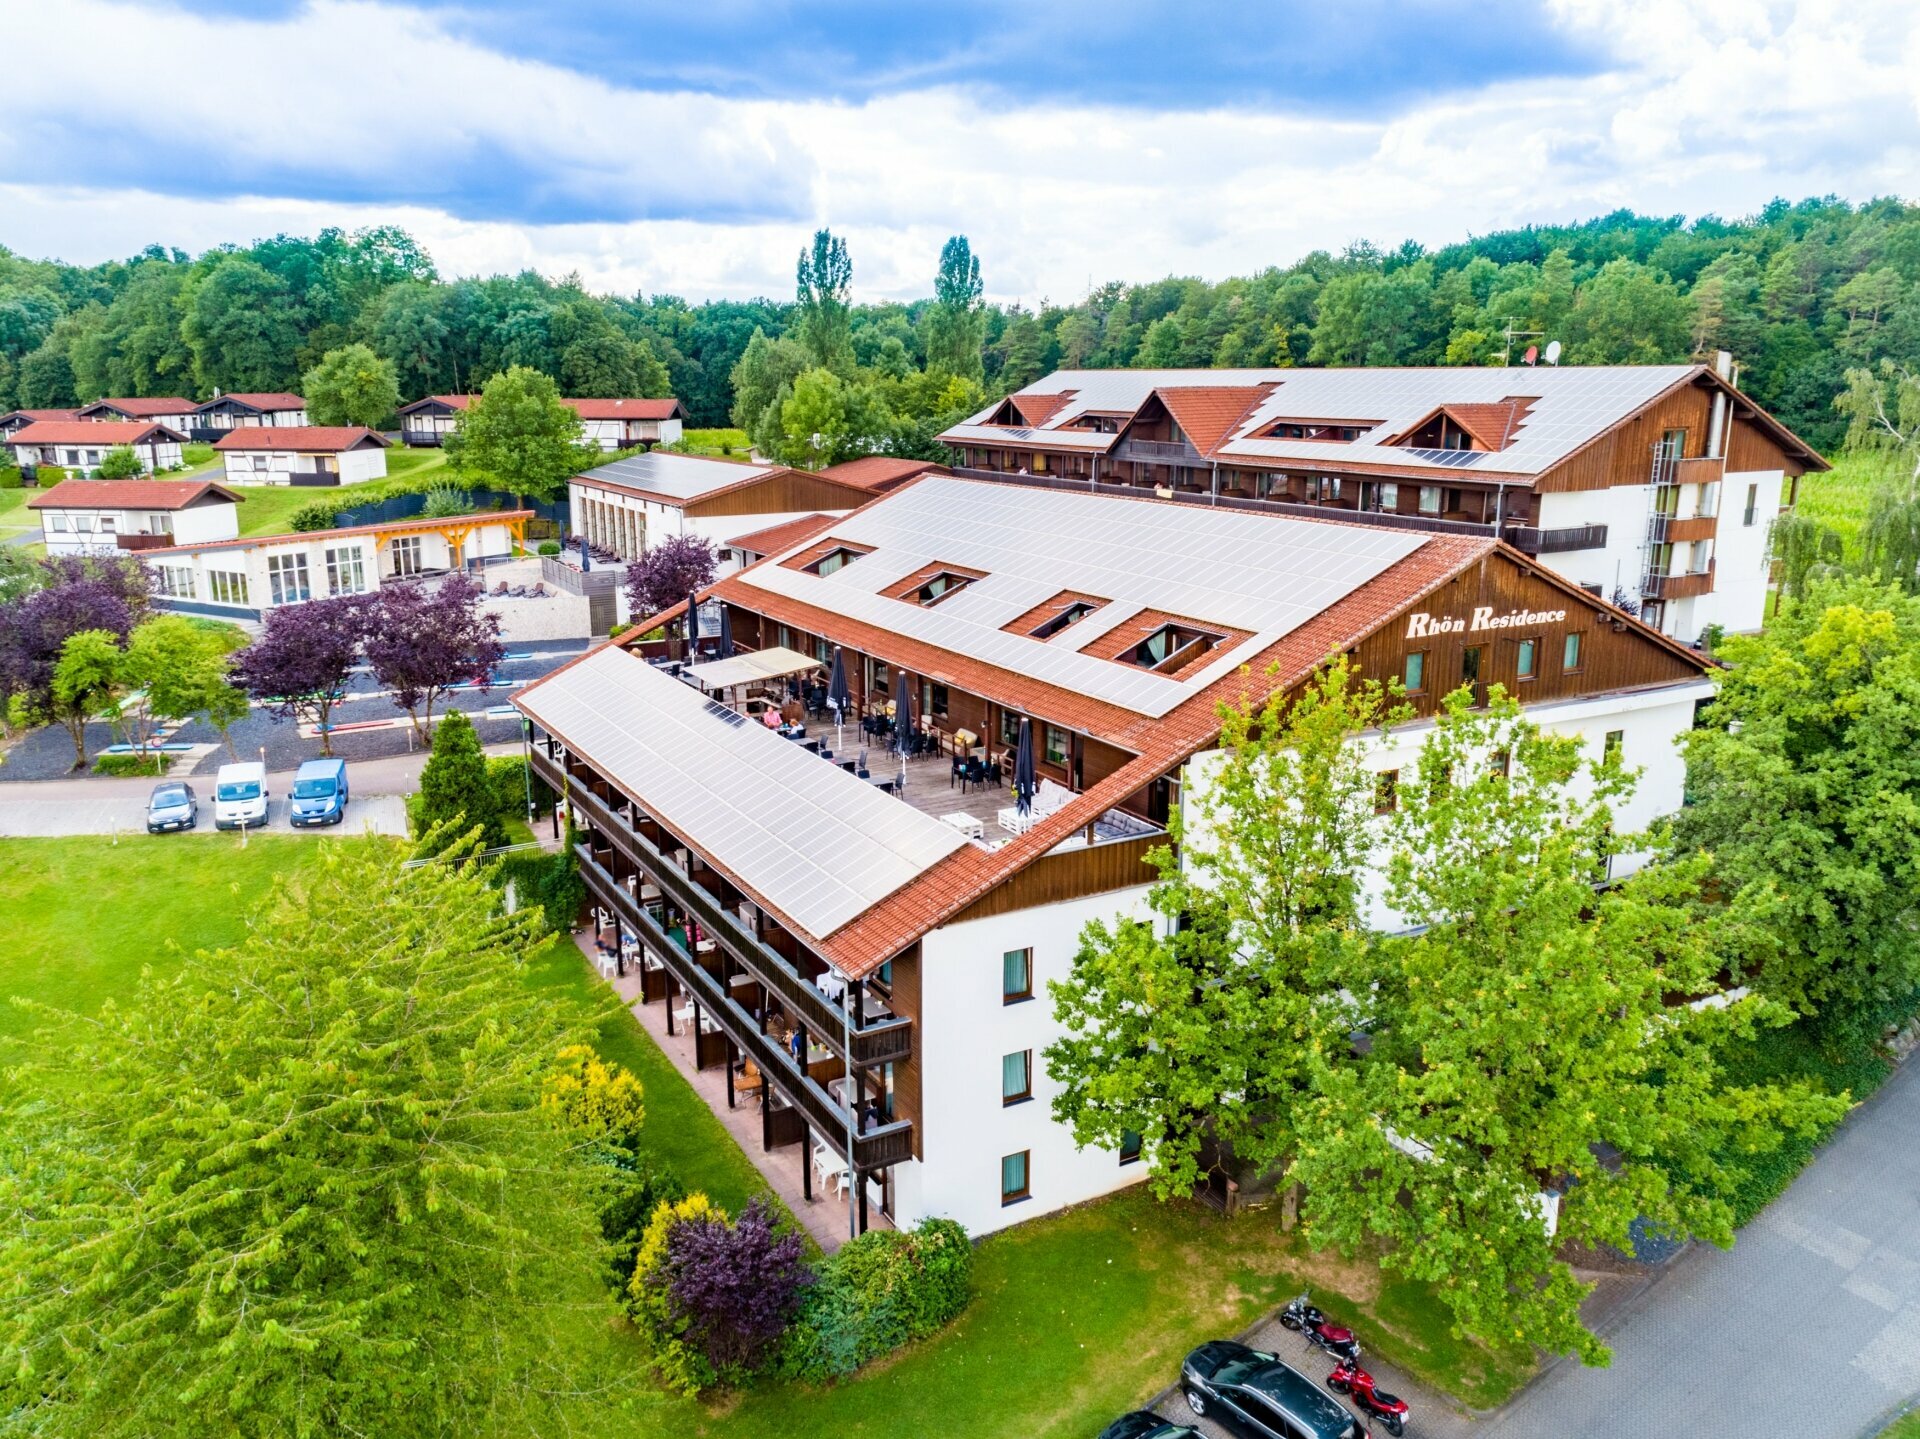 5 Tage Rhöner Natur entdecken – zu Fuß oder mit dem Rad – Hotel Rhön Residence (3 Sterne) in Dipperz, Hessen inkl. Halbpension